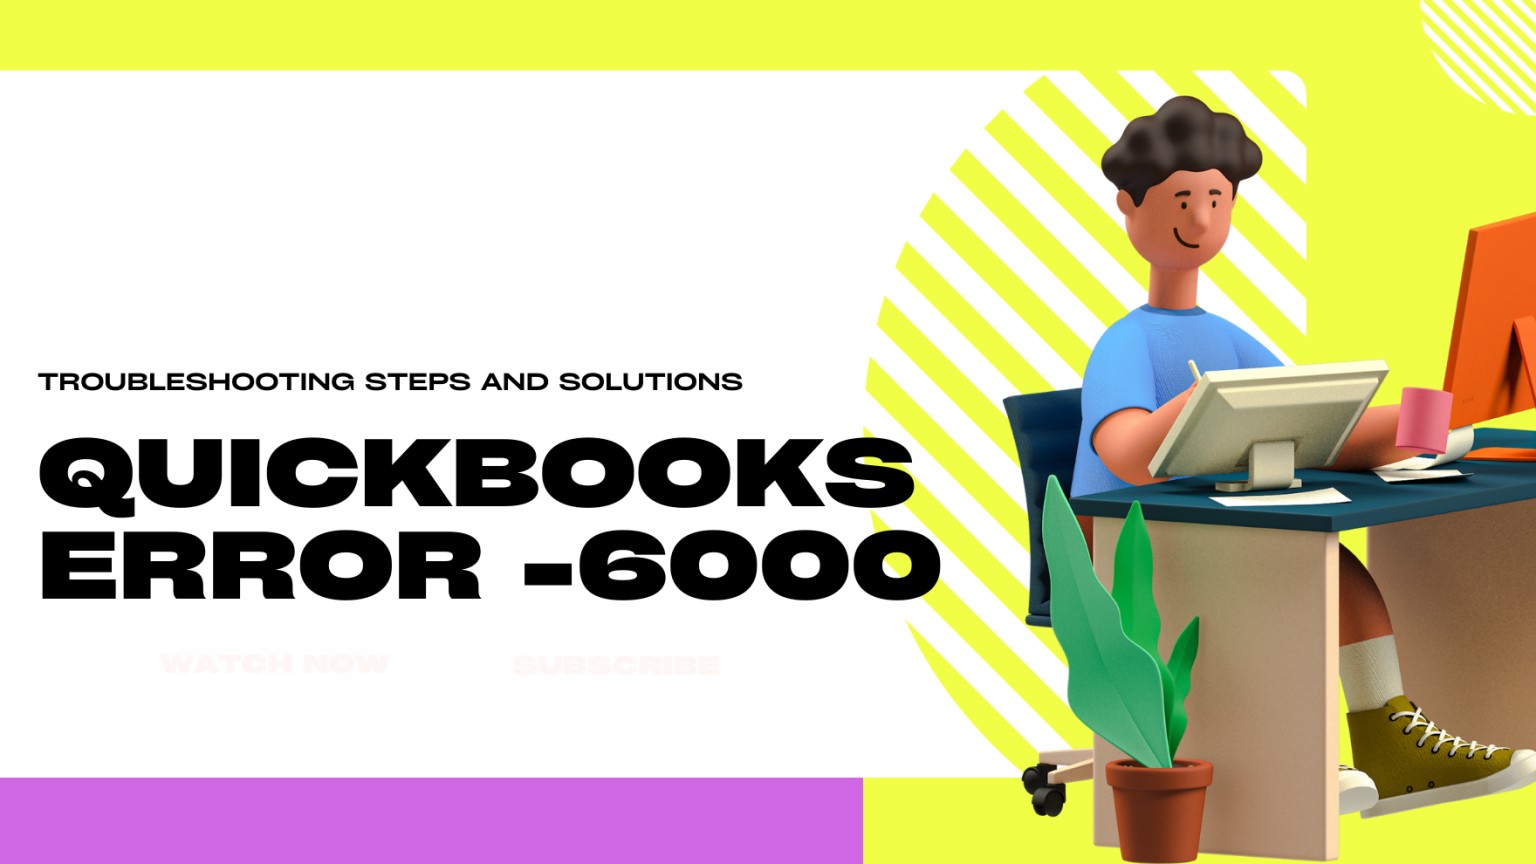 quickbook error code-6000